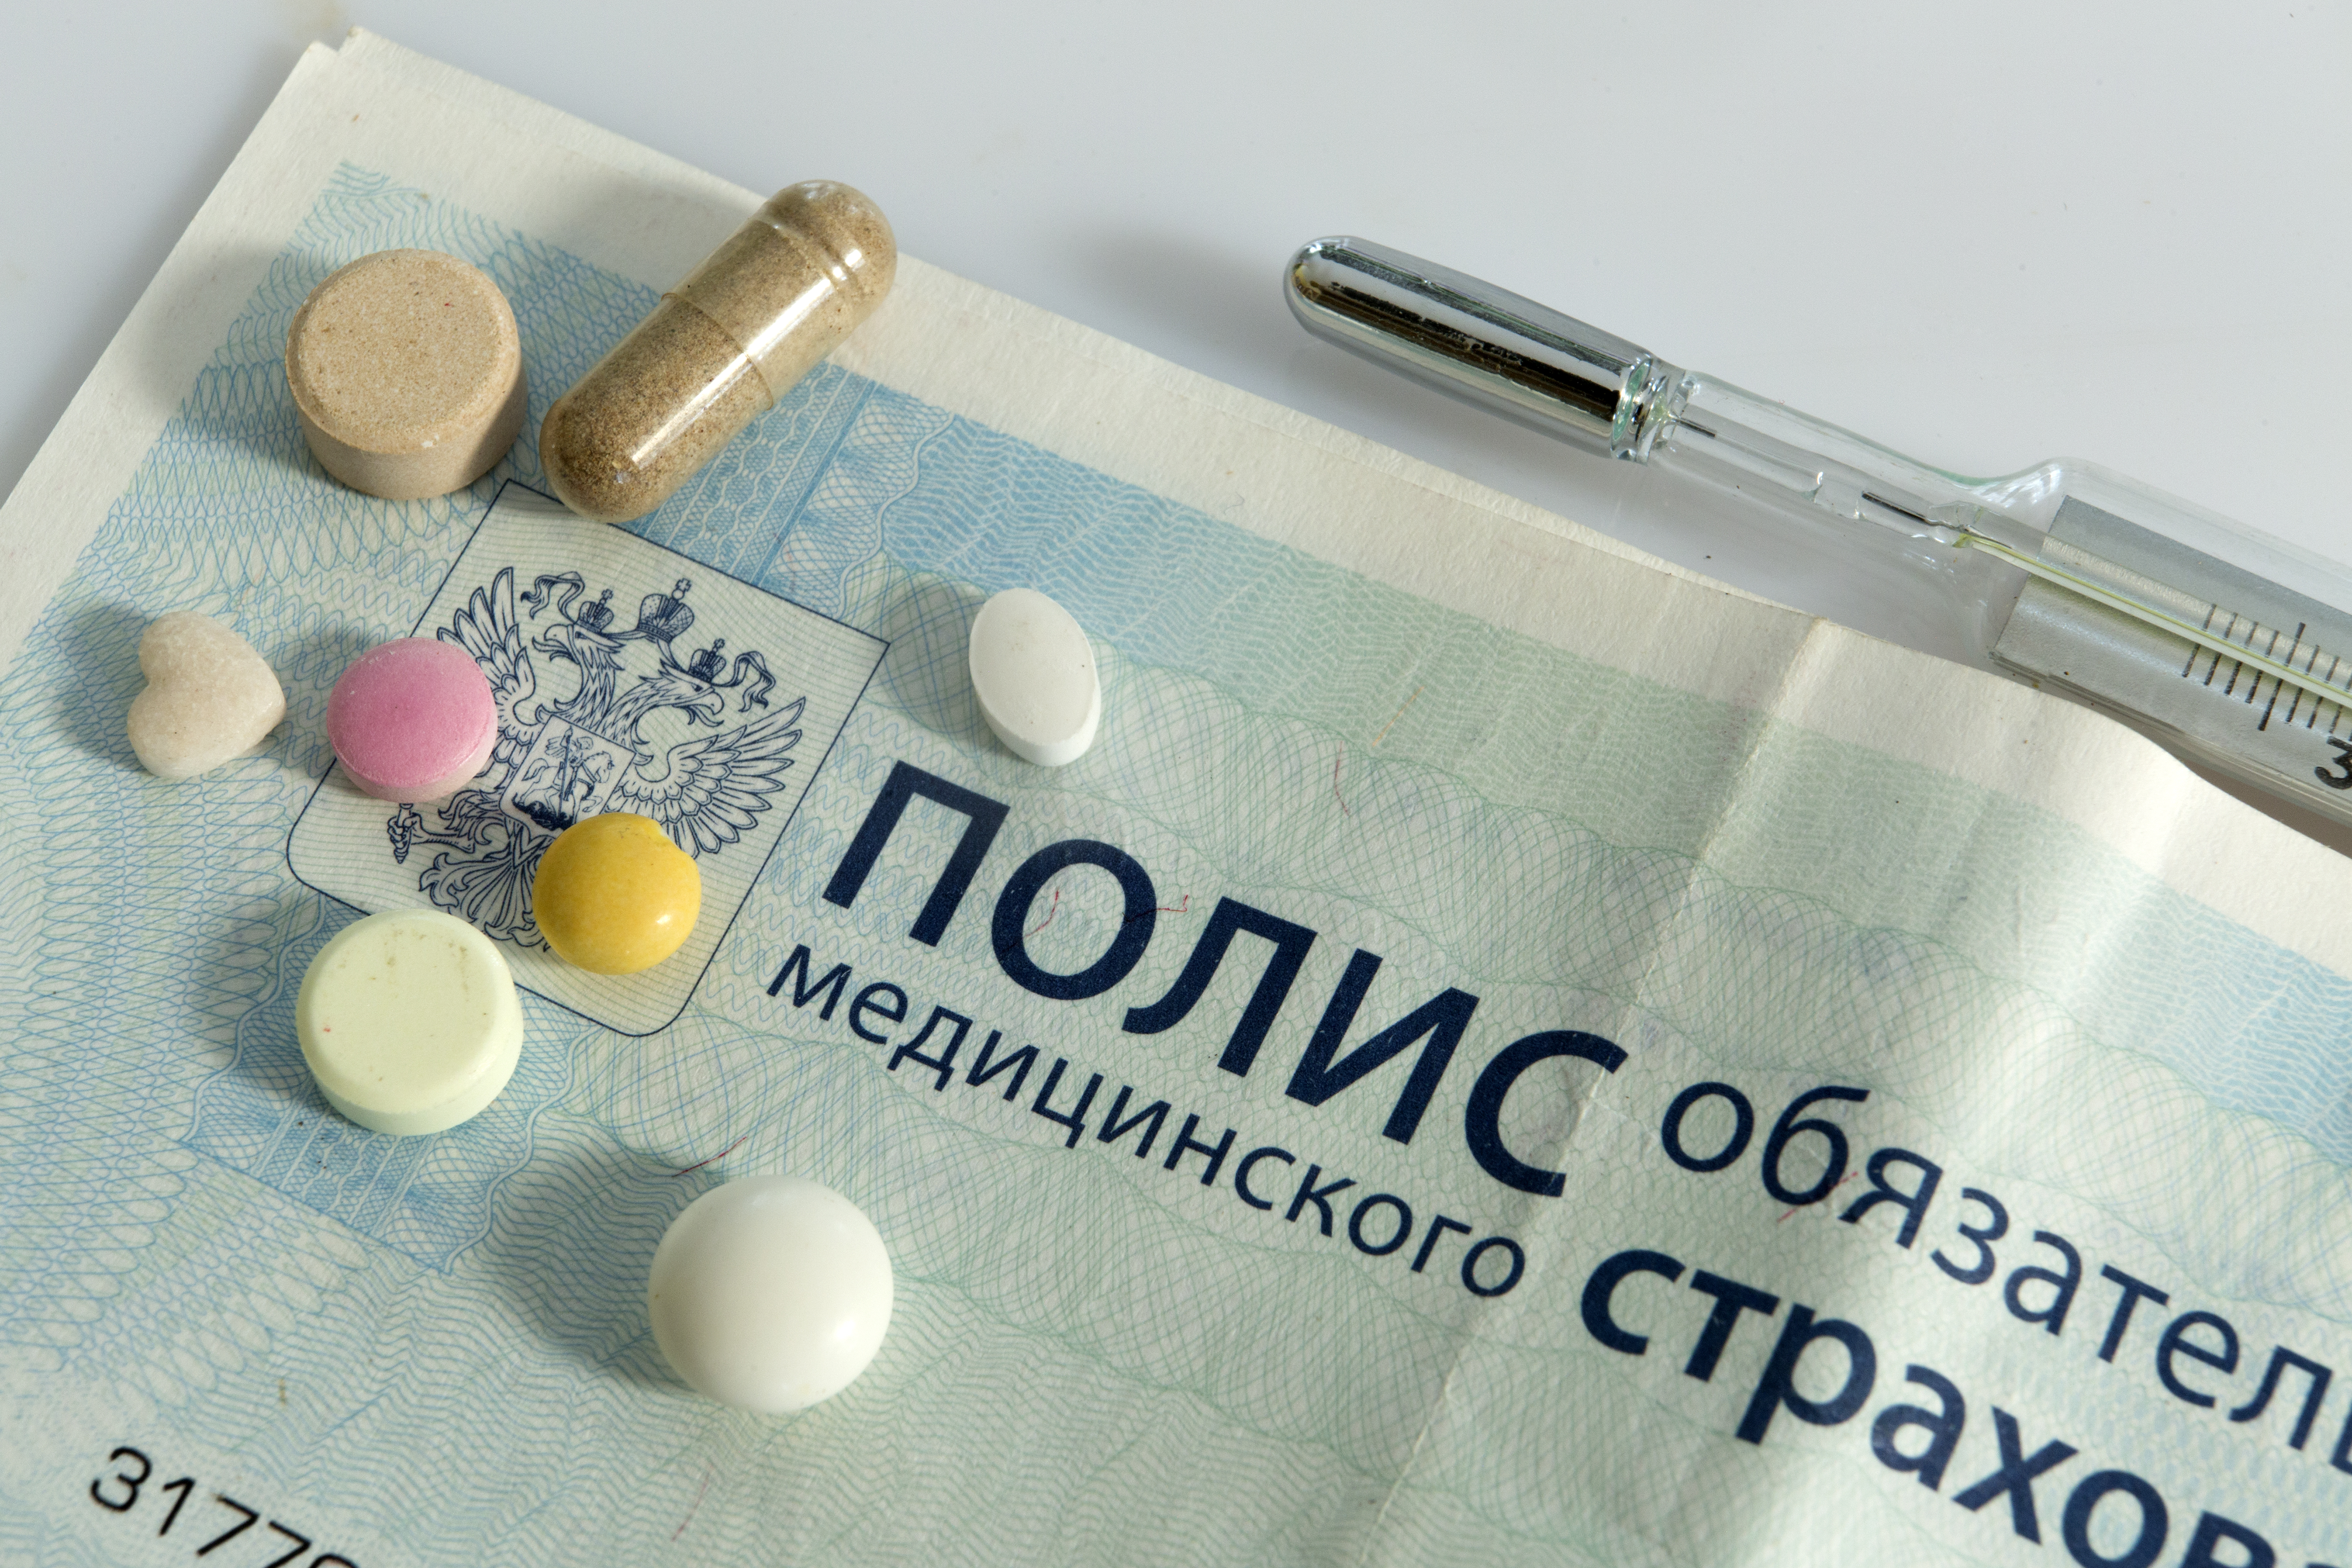 Прирост заболевших COVID-19 во Владимирской области снизился до 82 человек в сутки